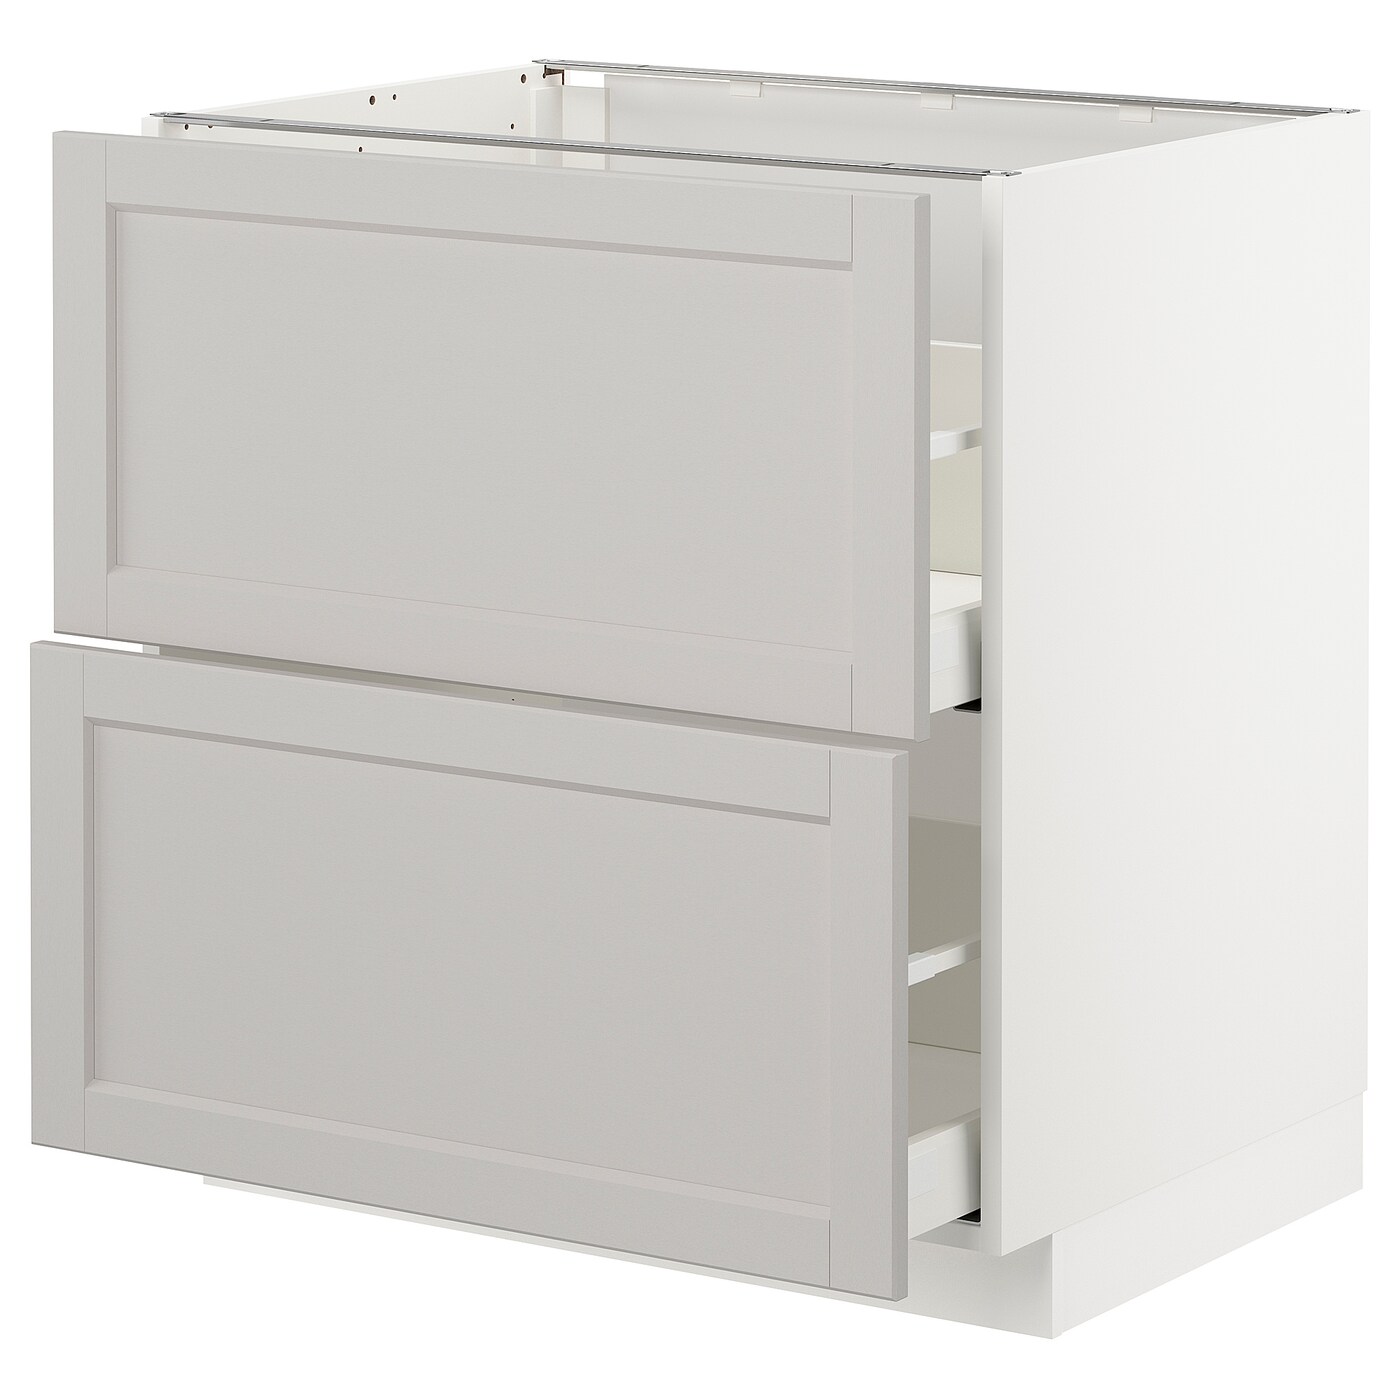 Напольный кухонный шкаф  - IKEA METOD MAXIMERA, 88x62x80см, белый/светло-серый, МЕТОД МАКСИМЕРА ИКЕА